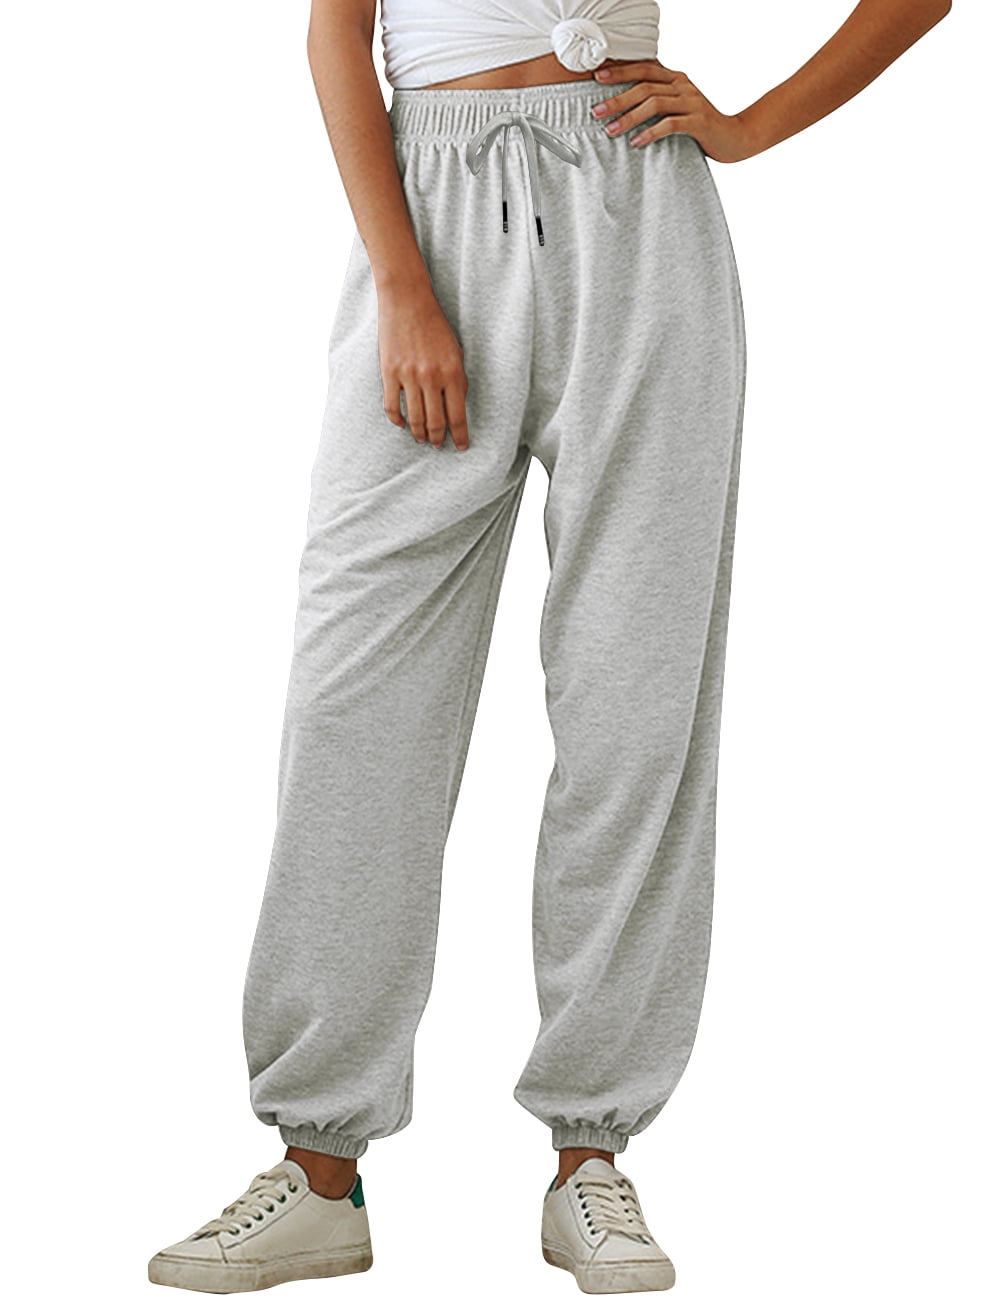 Yidarton Women's Sweatpants,Cinch Bottom Sweatpants for Women with ...